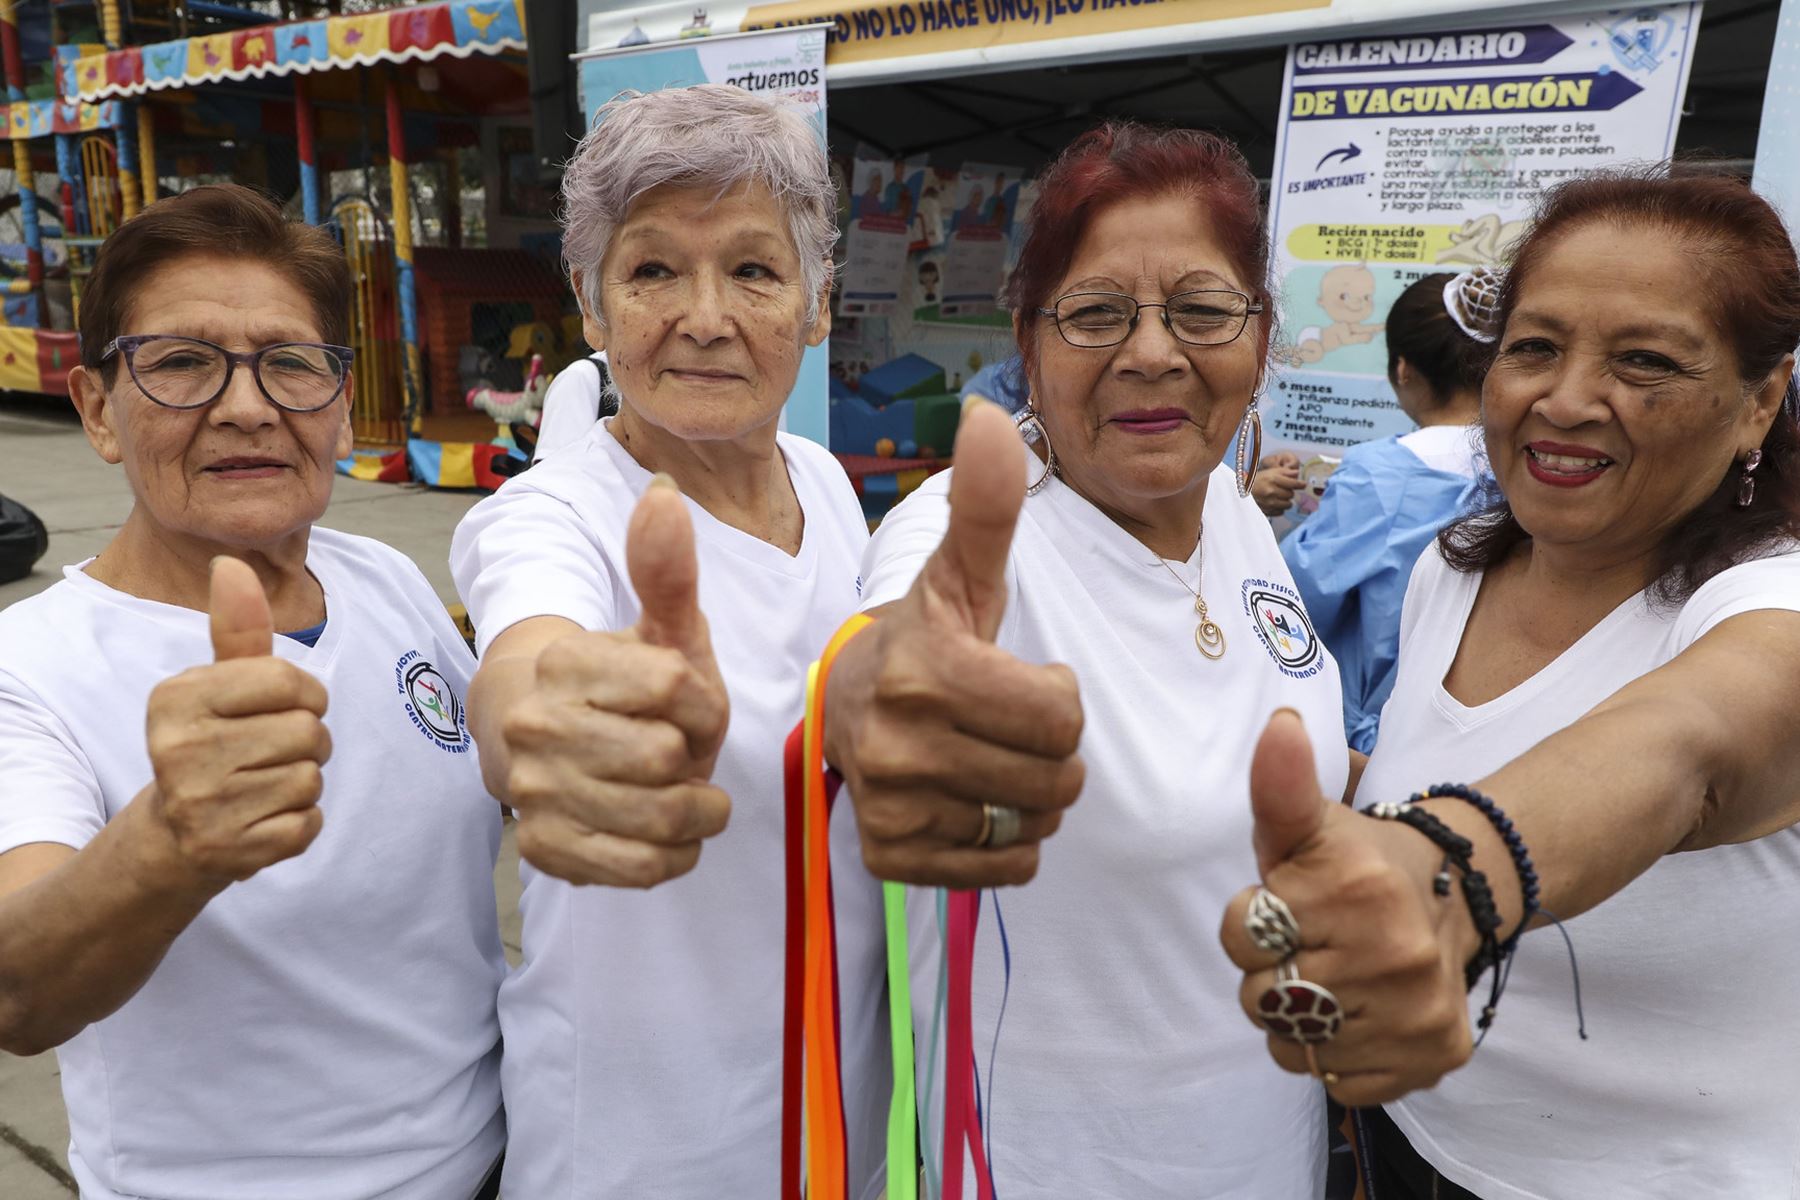 Minsa y Diris Lima norte realizó el Festival por la salud para la persona adulta mayor.
Foto: Minsa